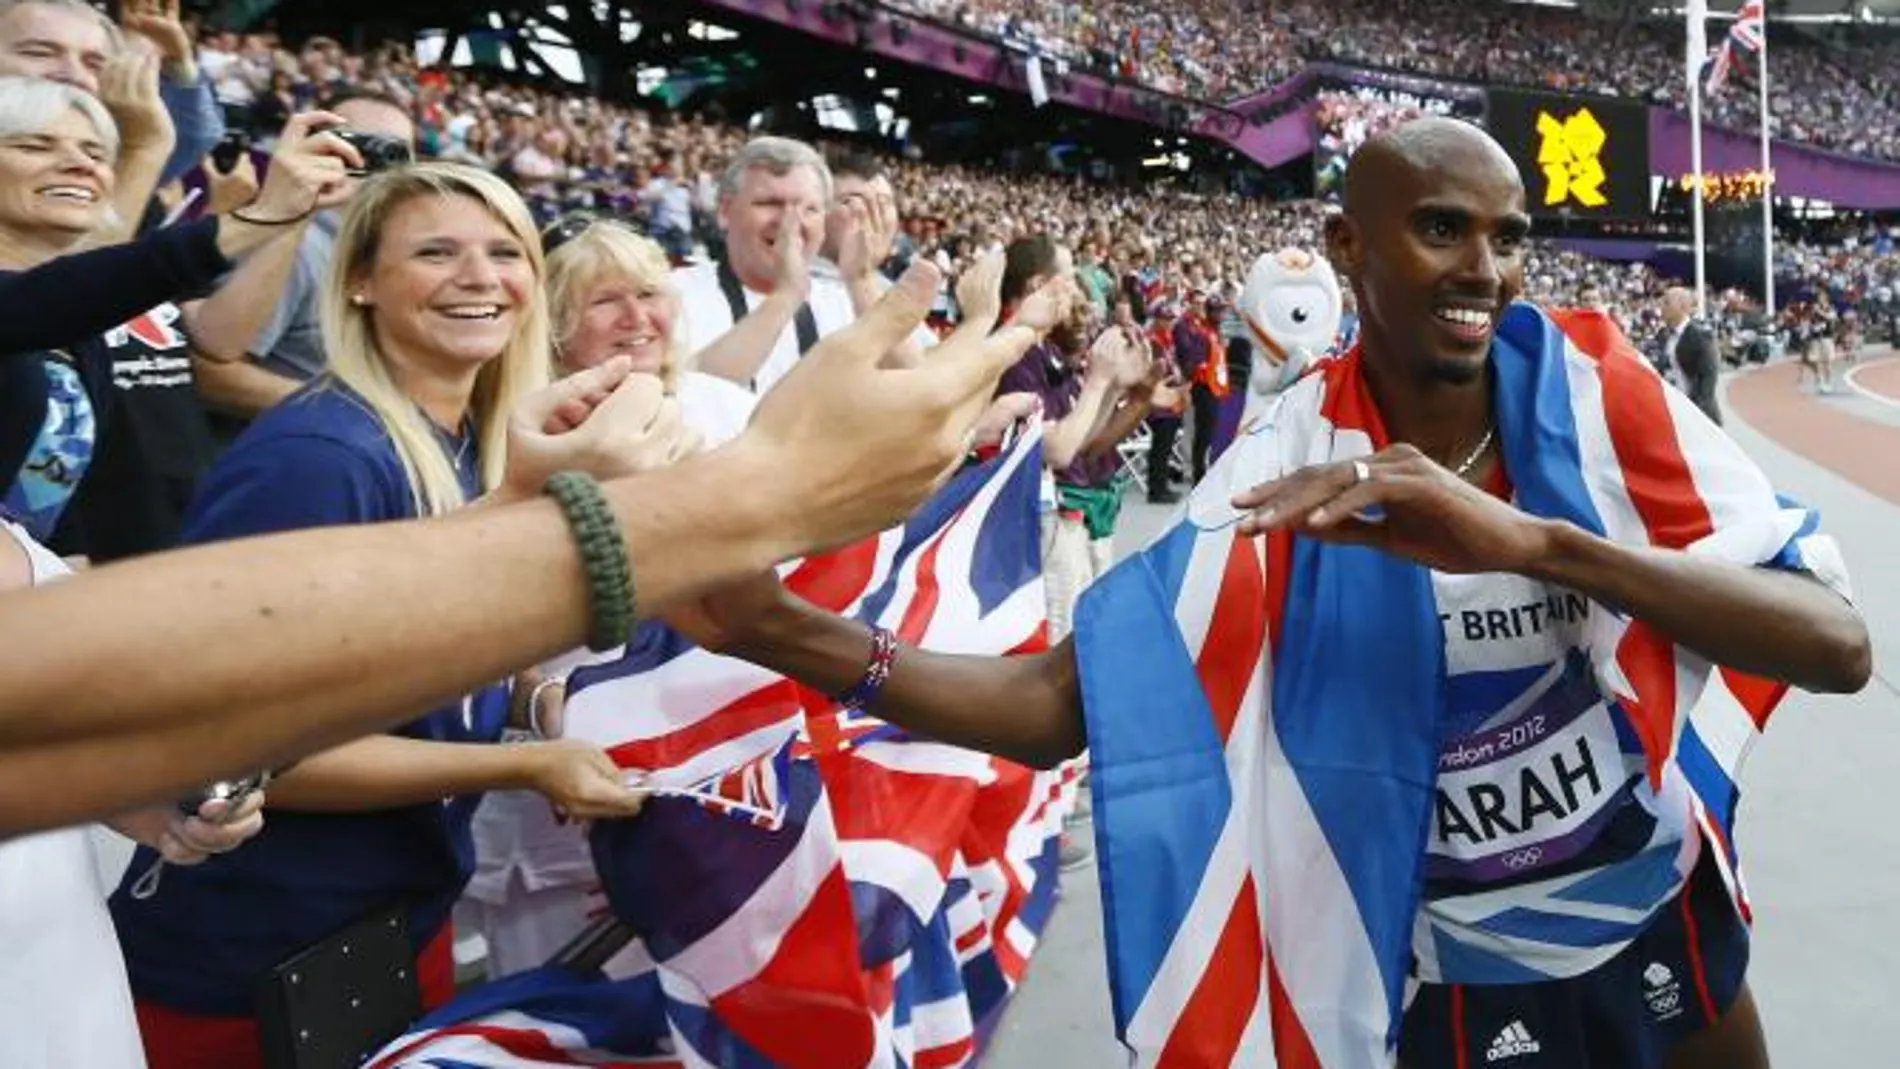 El atleta británico Mohamed Farah logró el doblete olímpico del fondo con su victoria en 5.000 metros